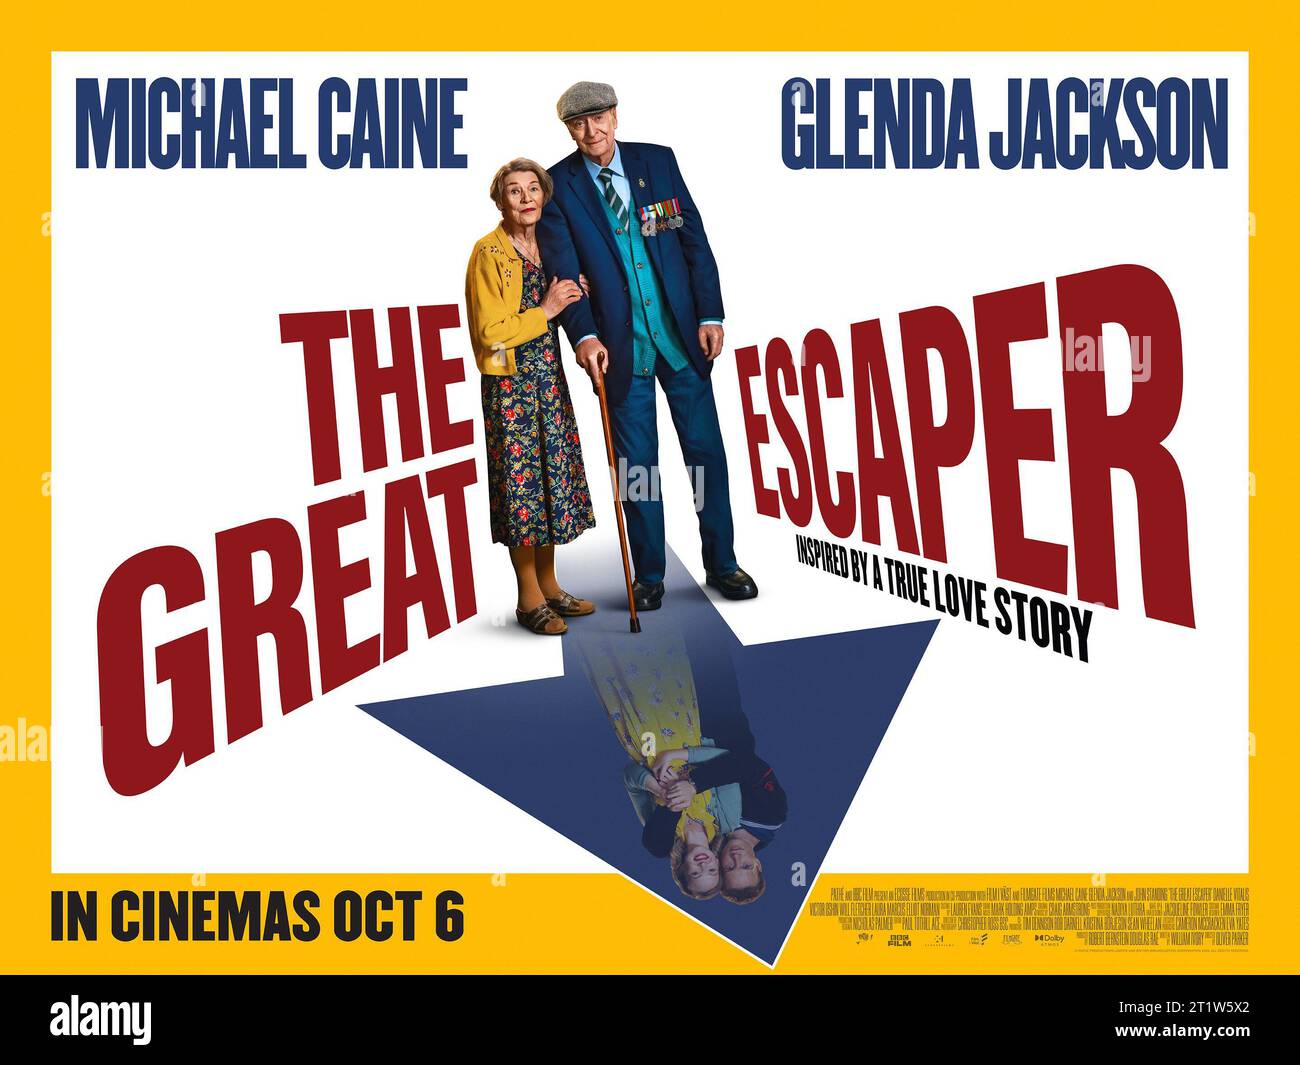 The Great Escaper  Glenda Jackson & Michael Caine poster Stock Photo